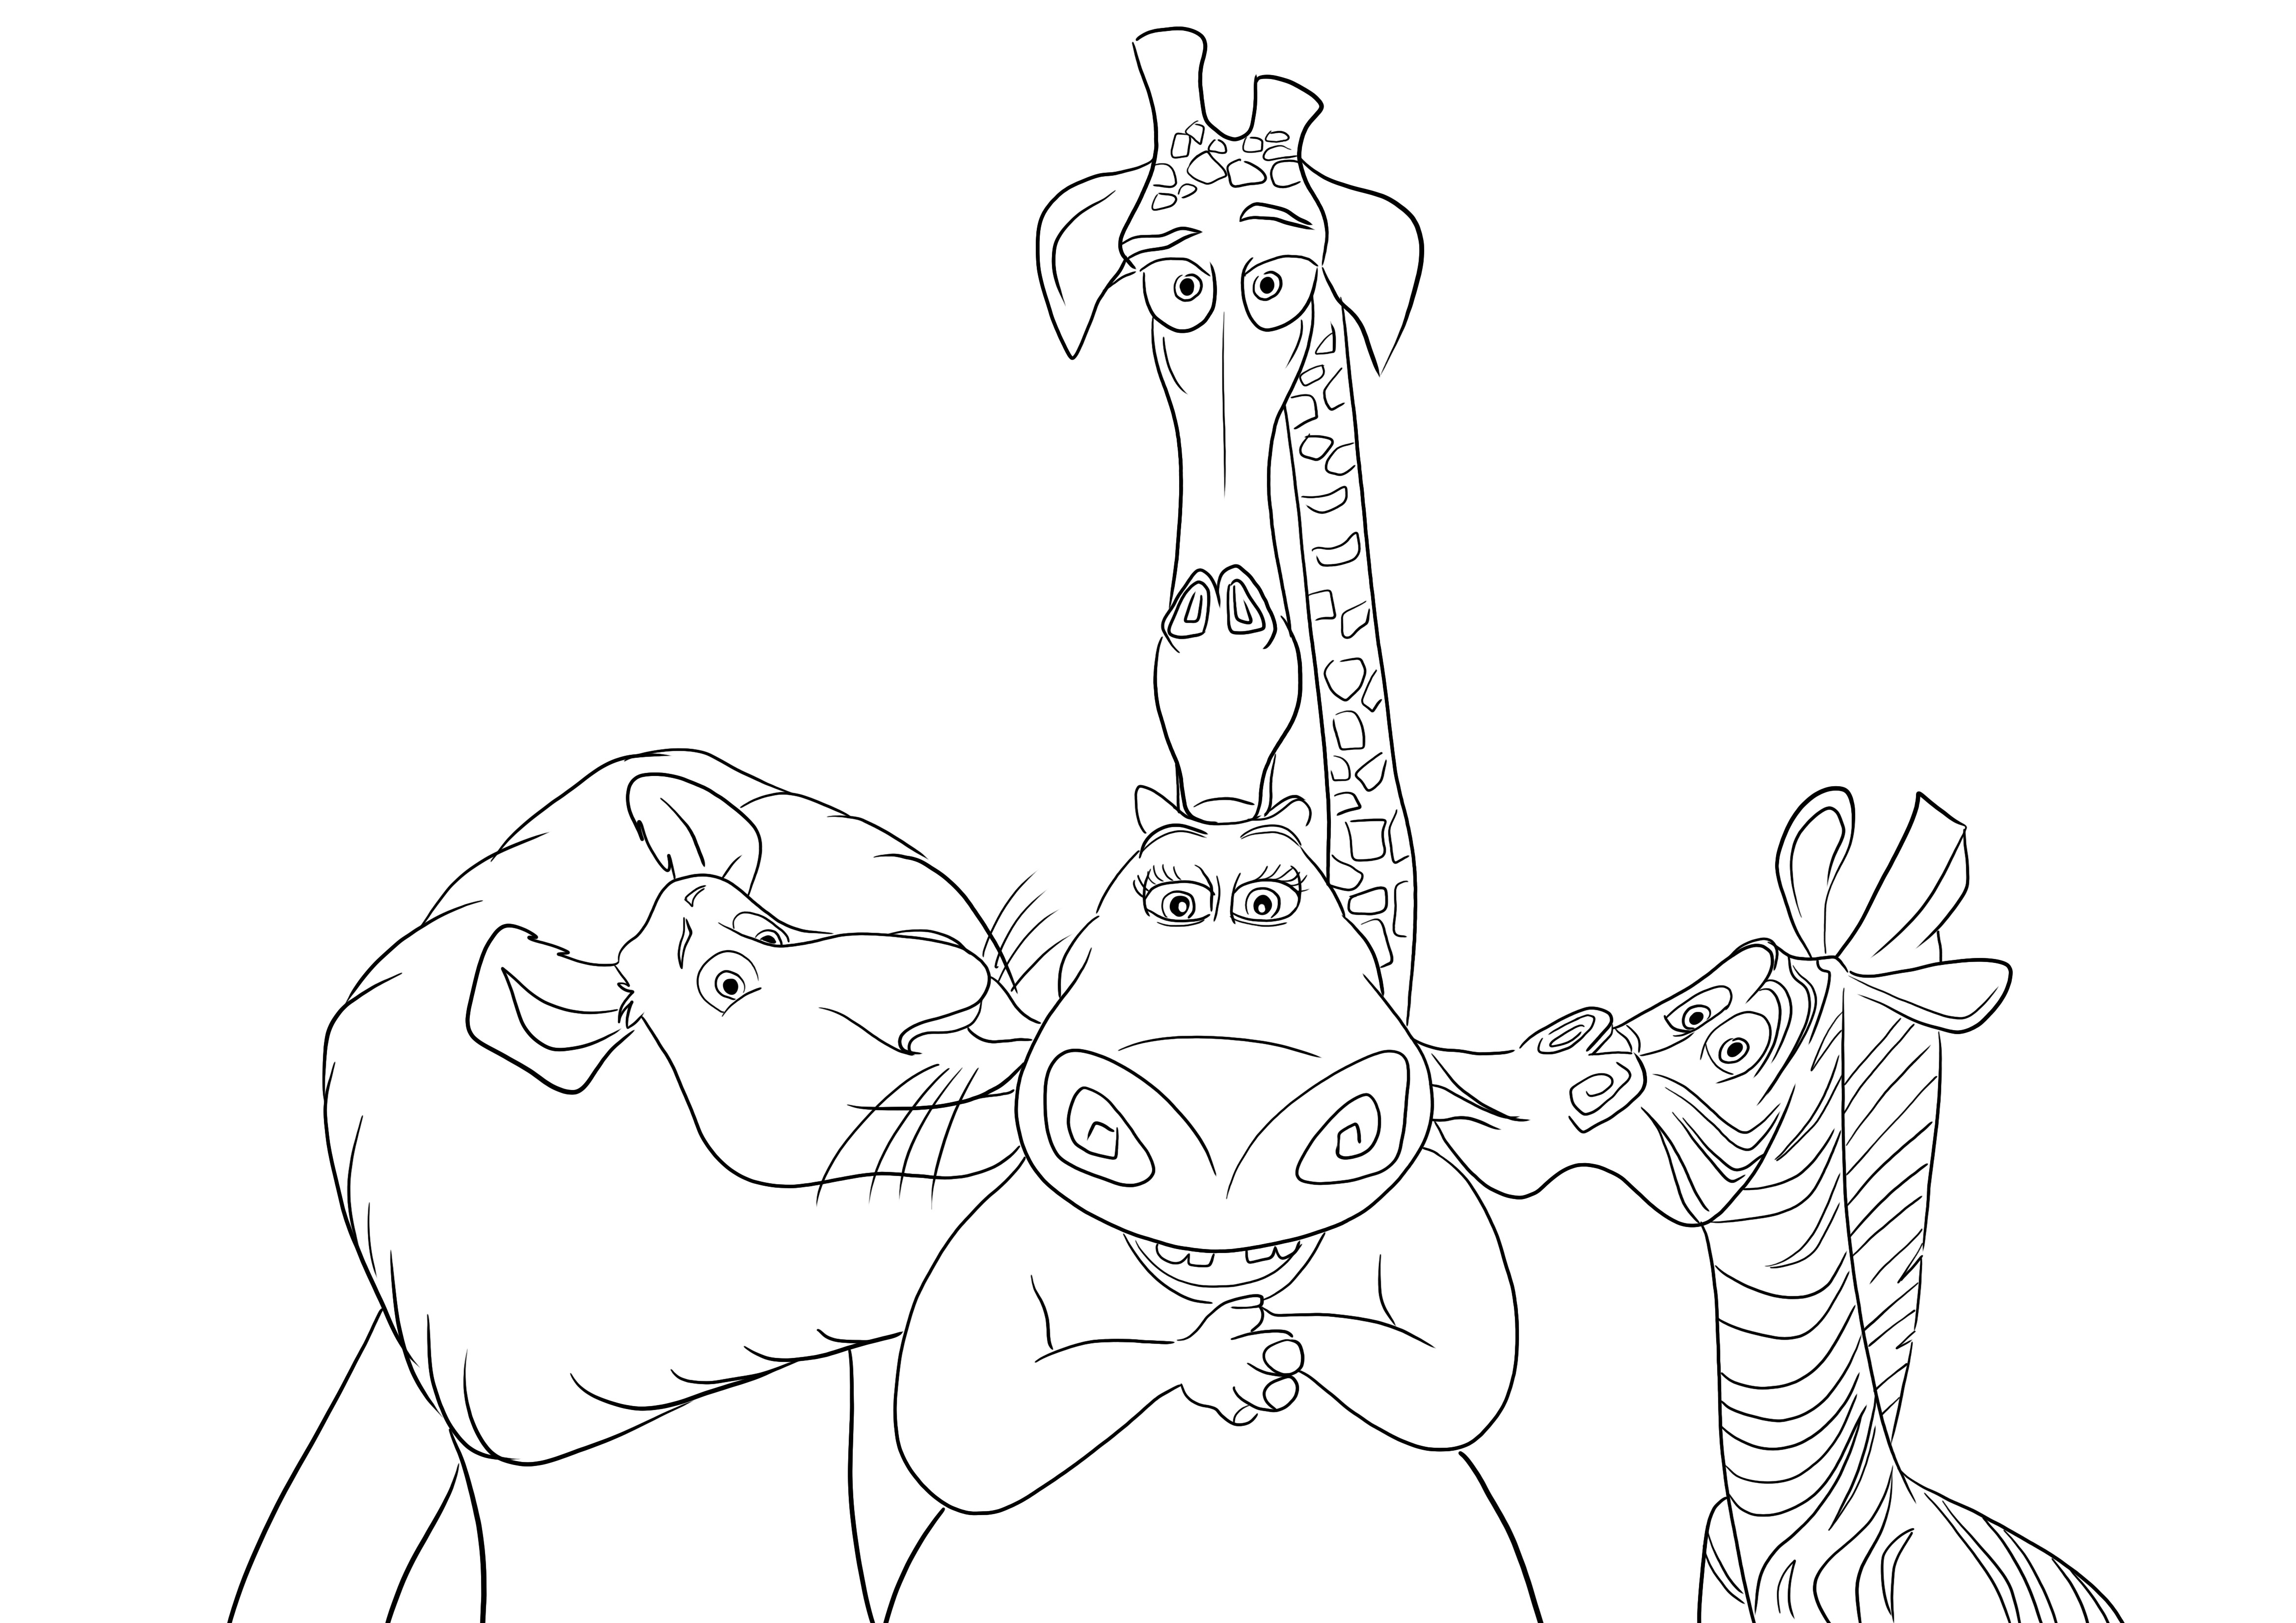 Ein kostenloser Ausdruck von Alex-Martin und Melman, die das Nilpferd Gloria küssen, zum Ausmalen für Kinder